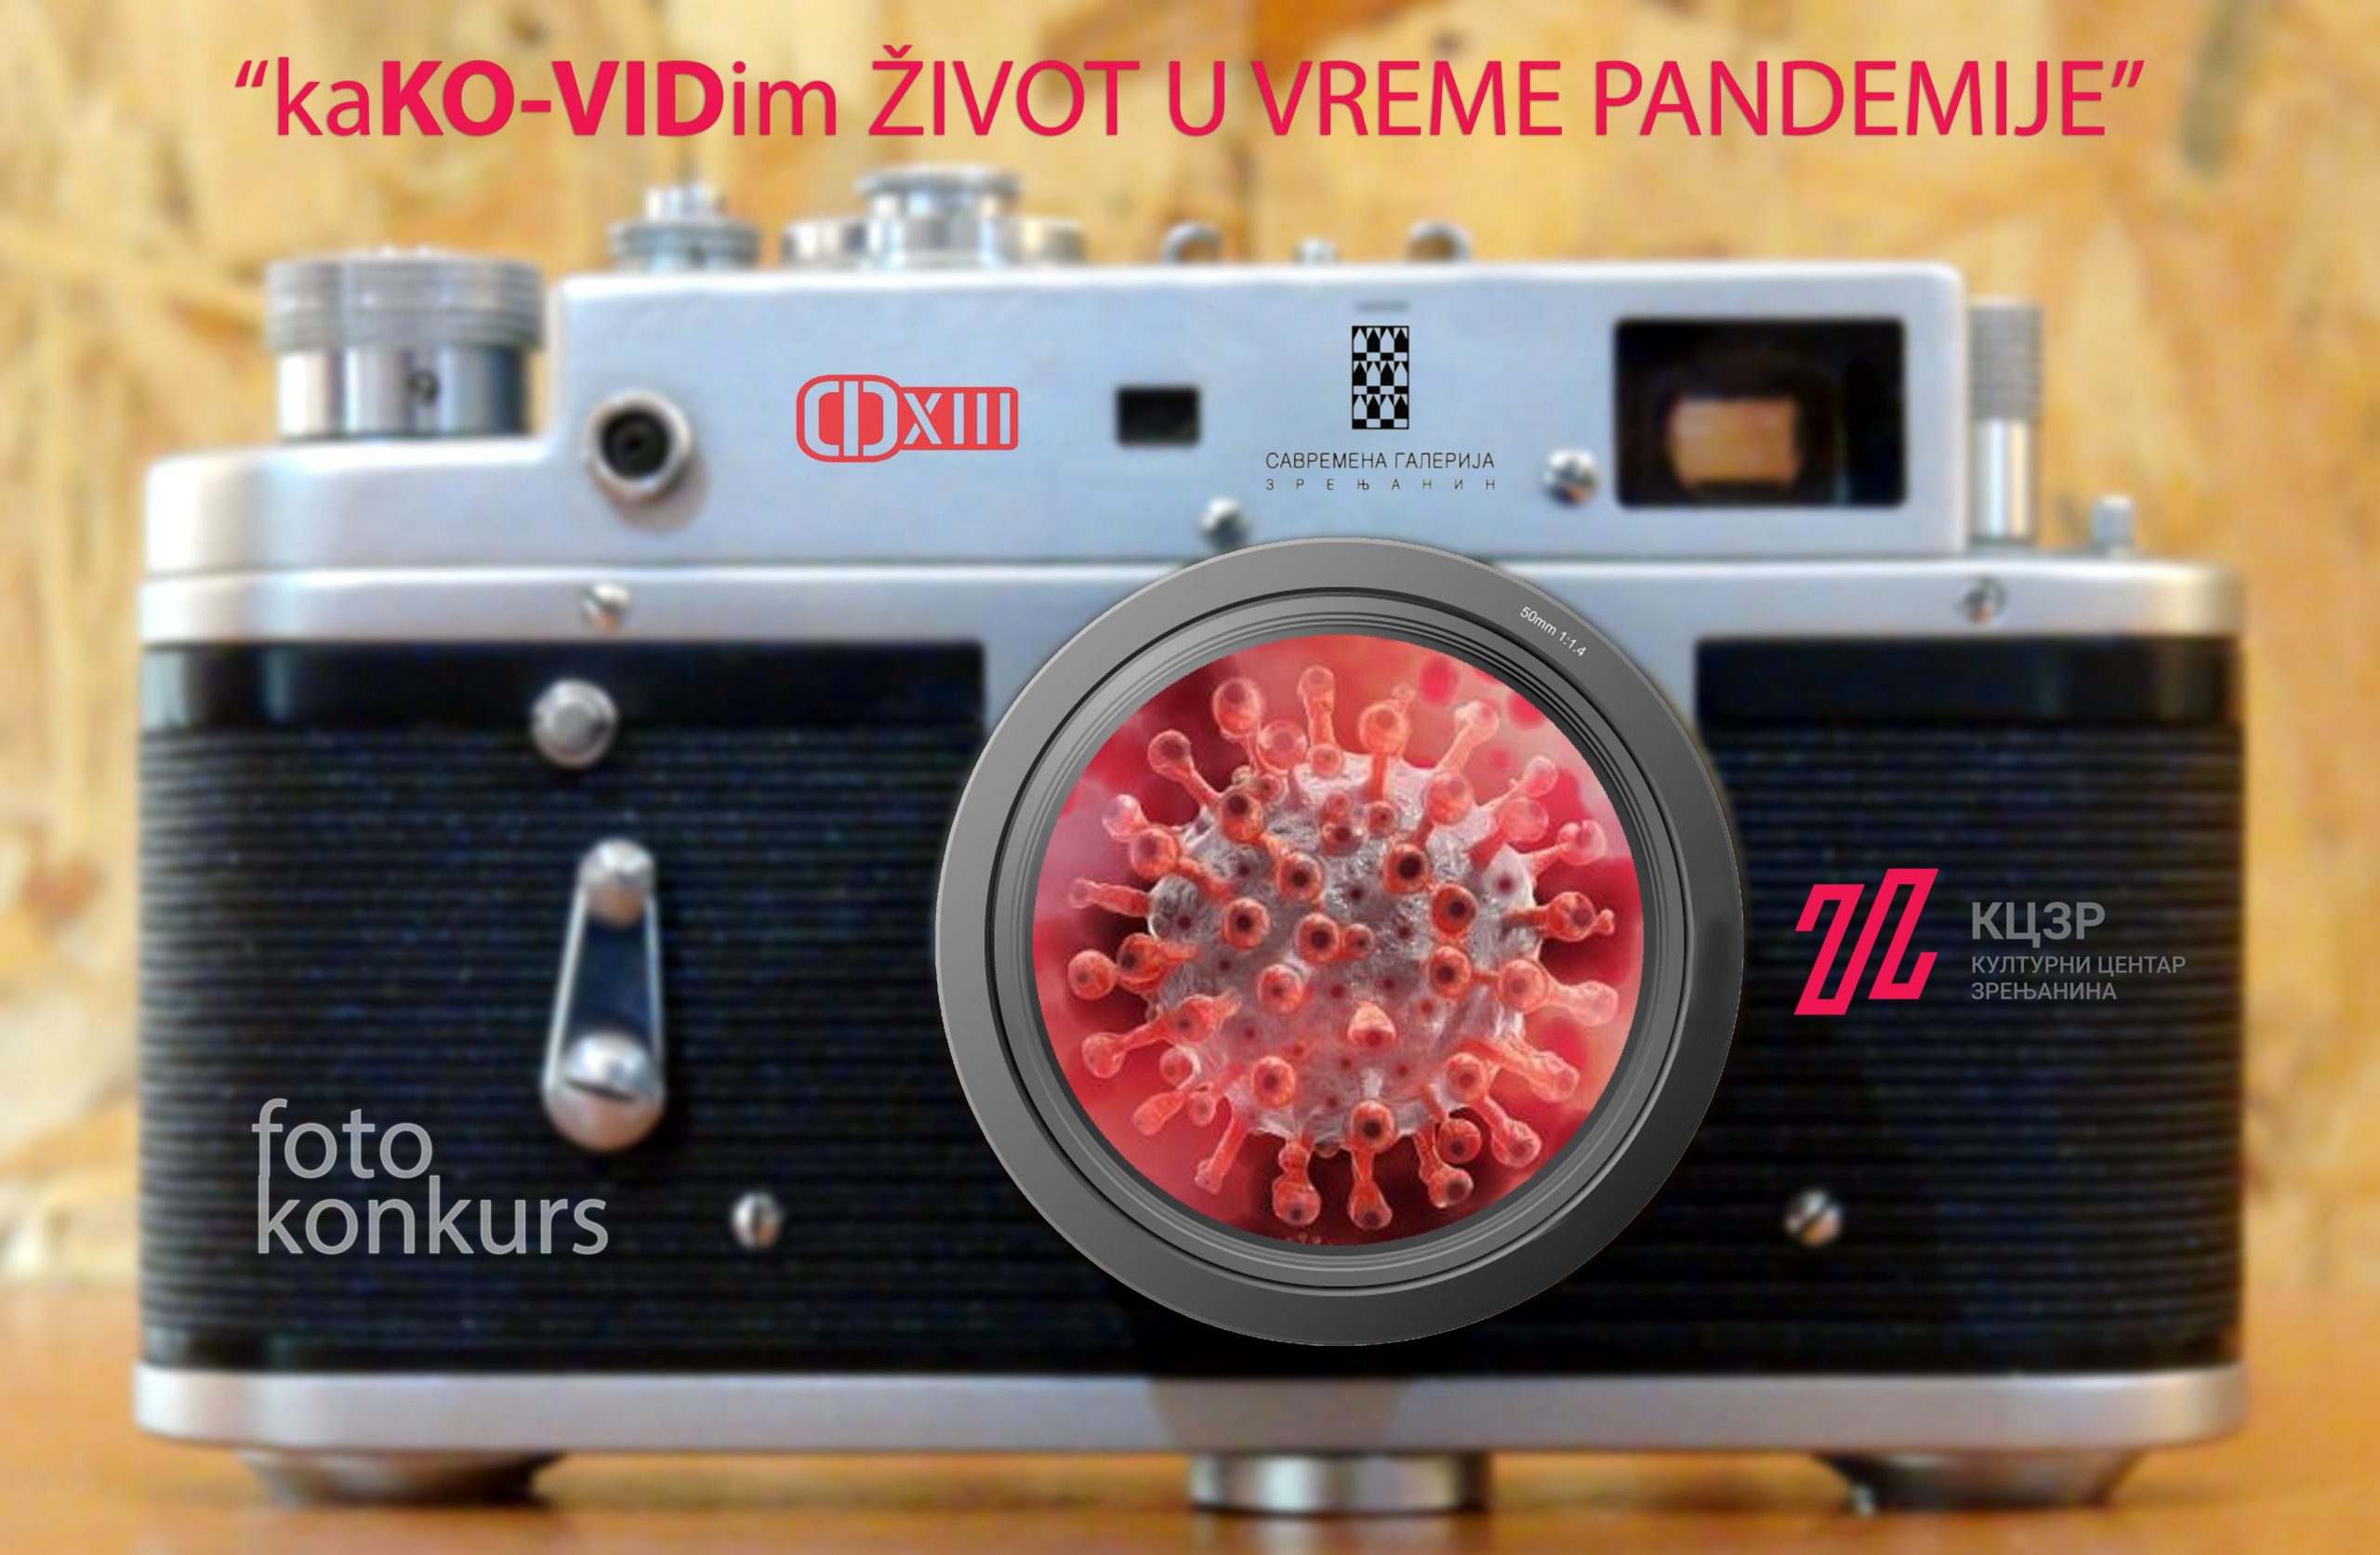 Raspisan foto konkurs „KaKO-VIDim život u vreme pandemije” 1